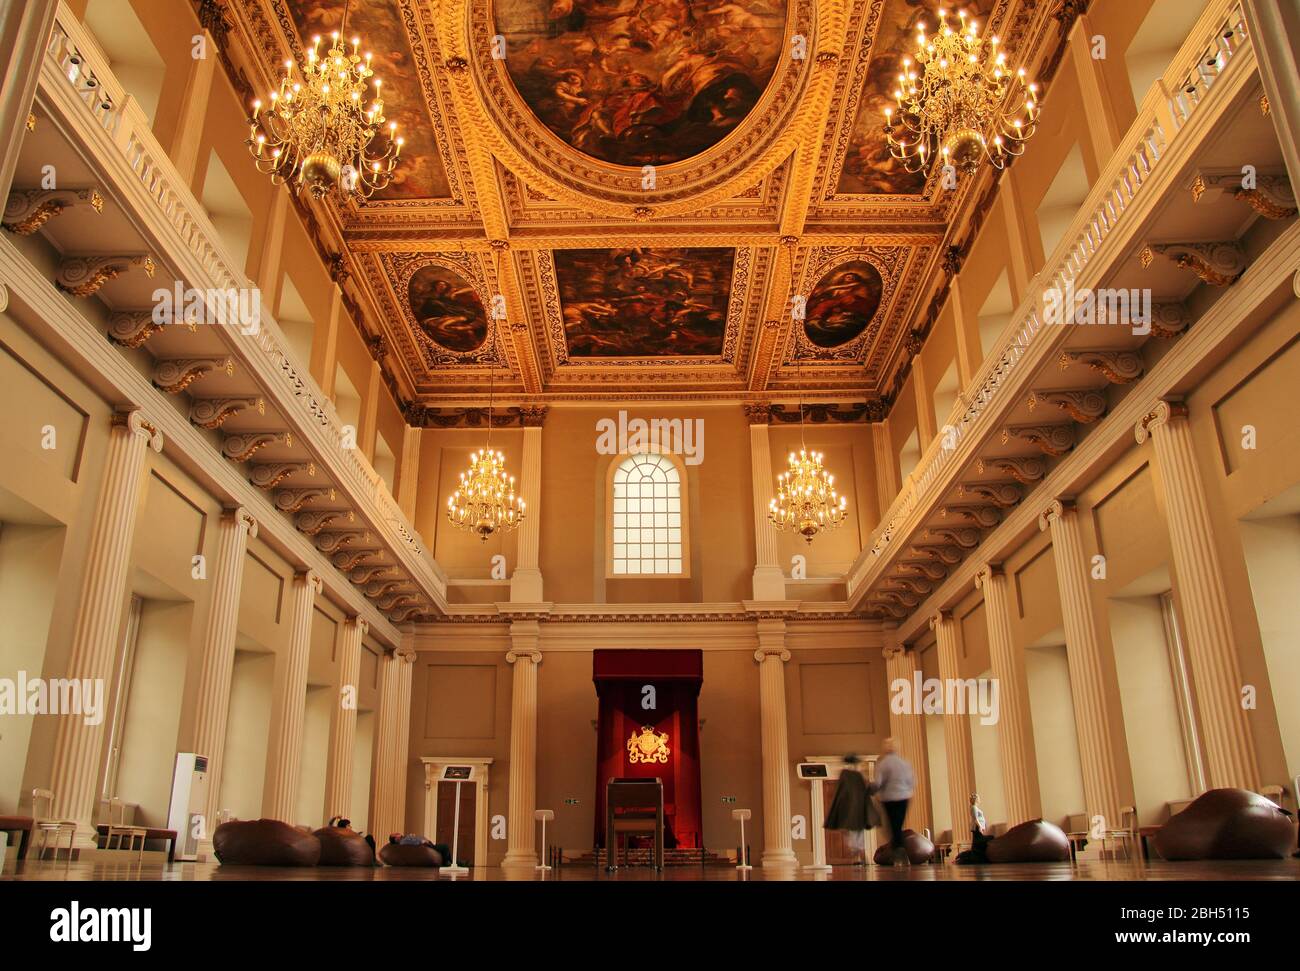 El hermoso Banqueting Hall de Londres es el último remanente sobreviviente del Palacio de Whitehall, la mayoría de los cuales se quemaron hasta el suelo en 1698 Foto de stock